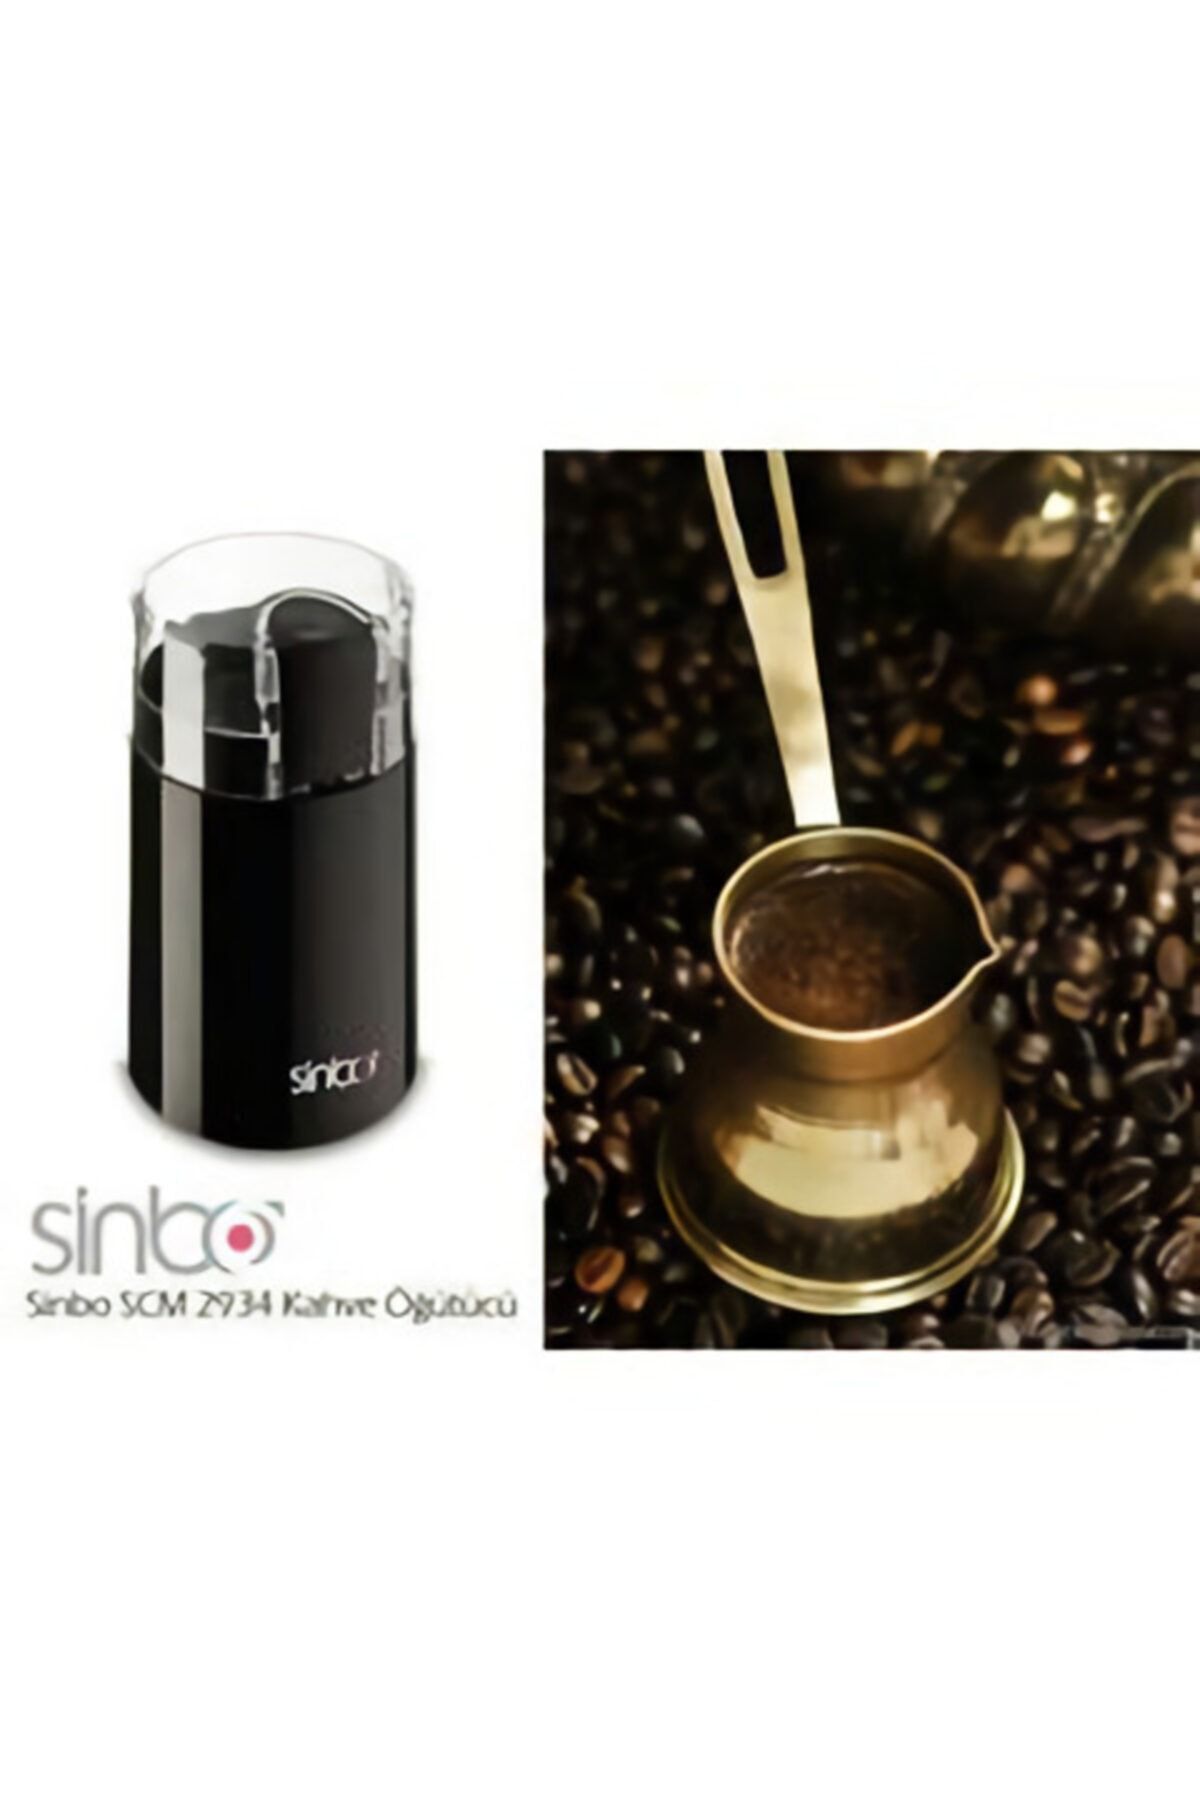 Sinbo Scm-2934 Kahve Öğütme Makinesi